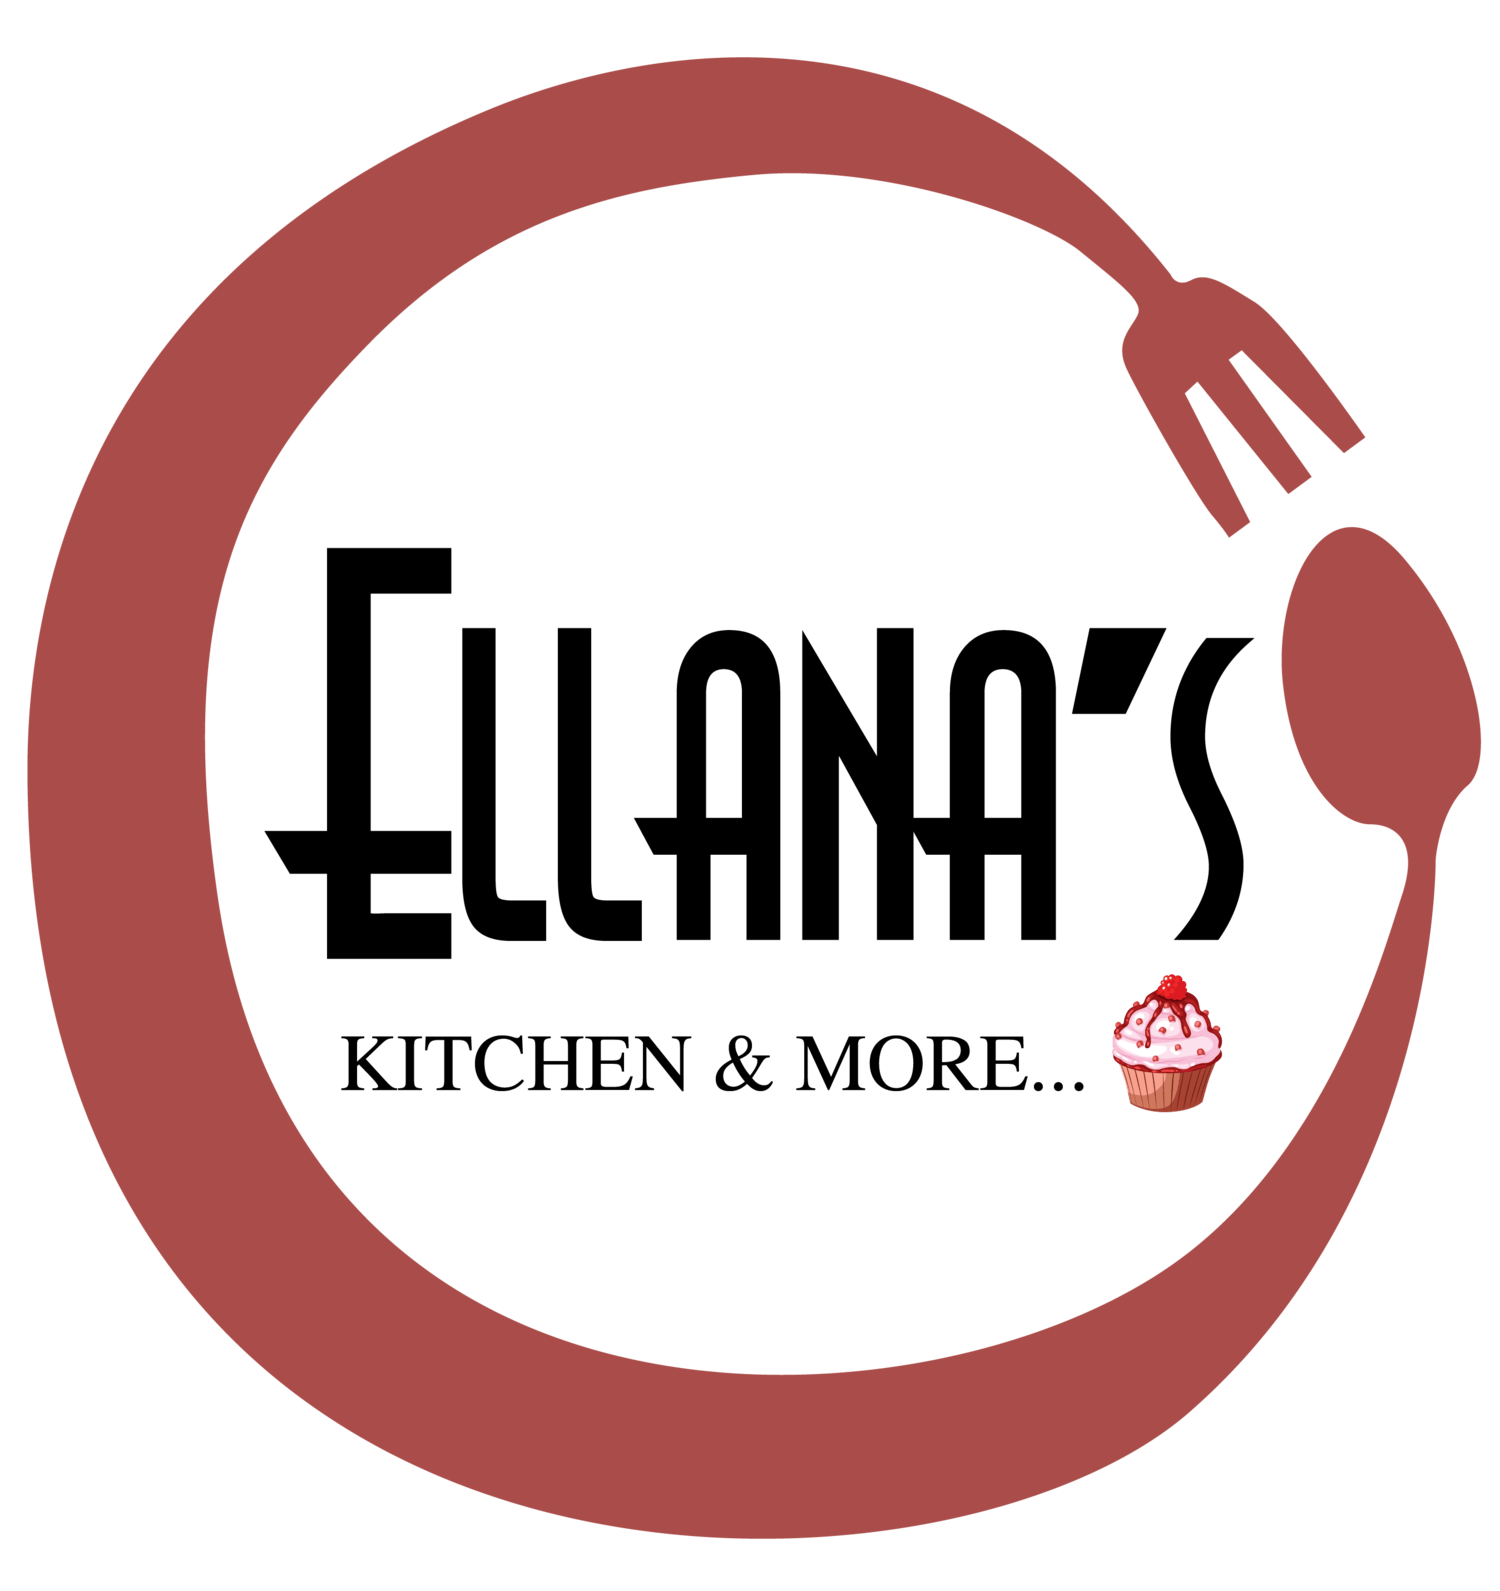 Ellana's Kitchen & More